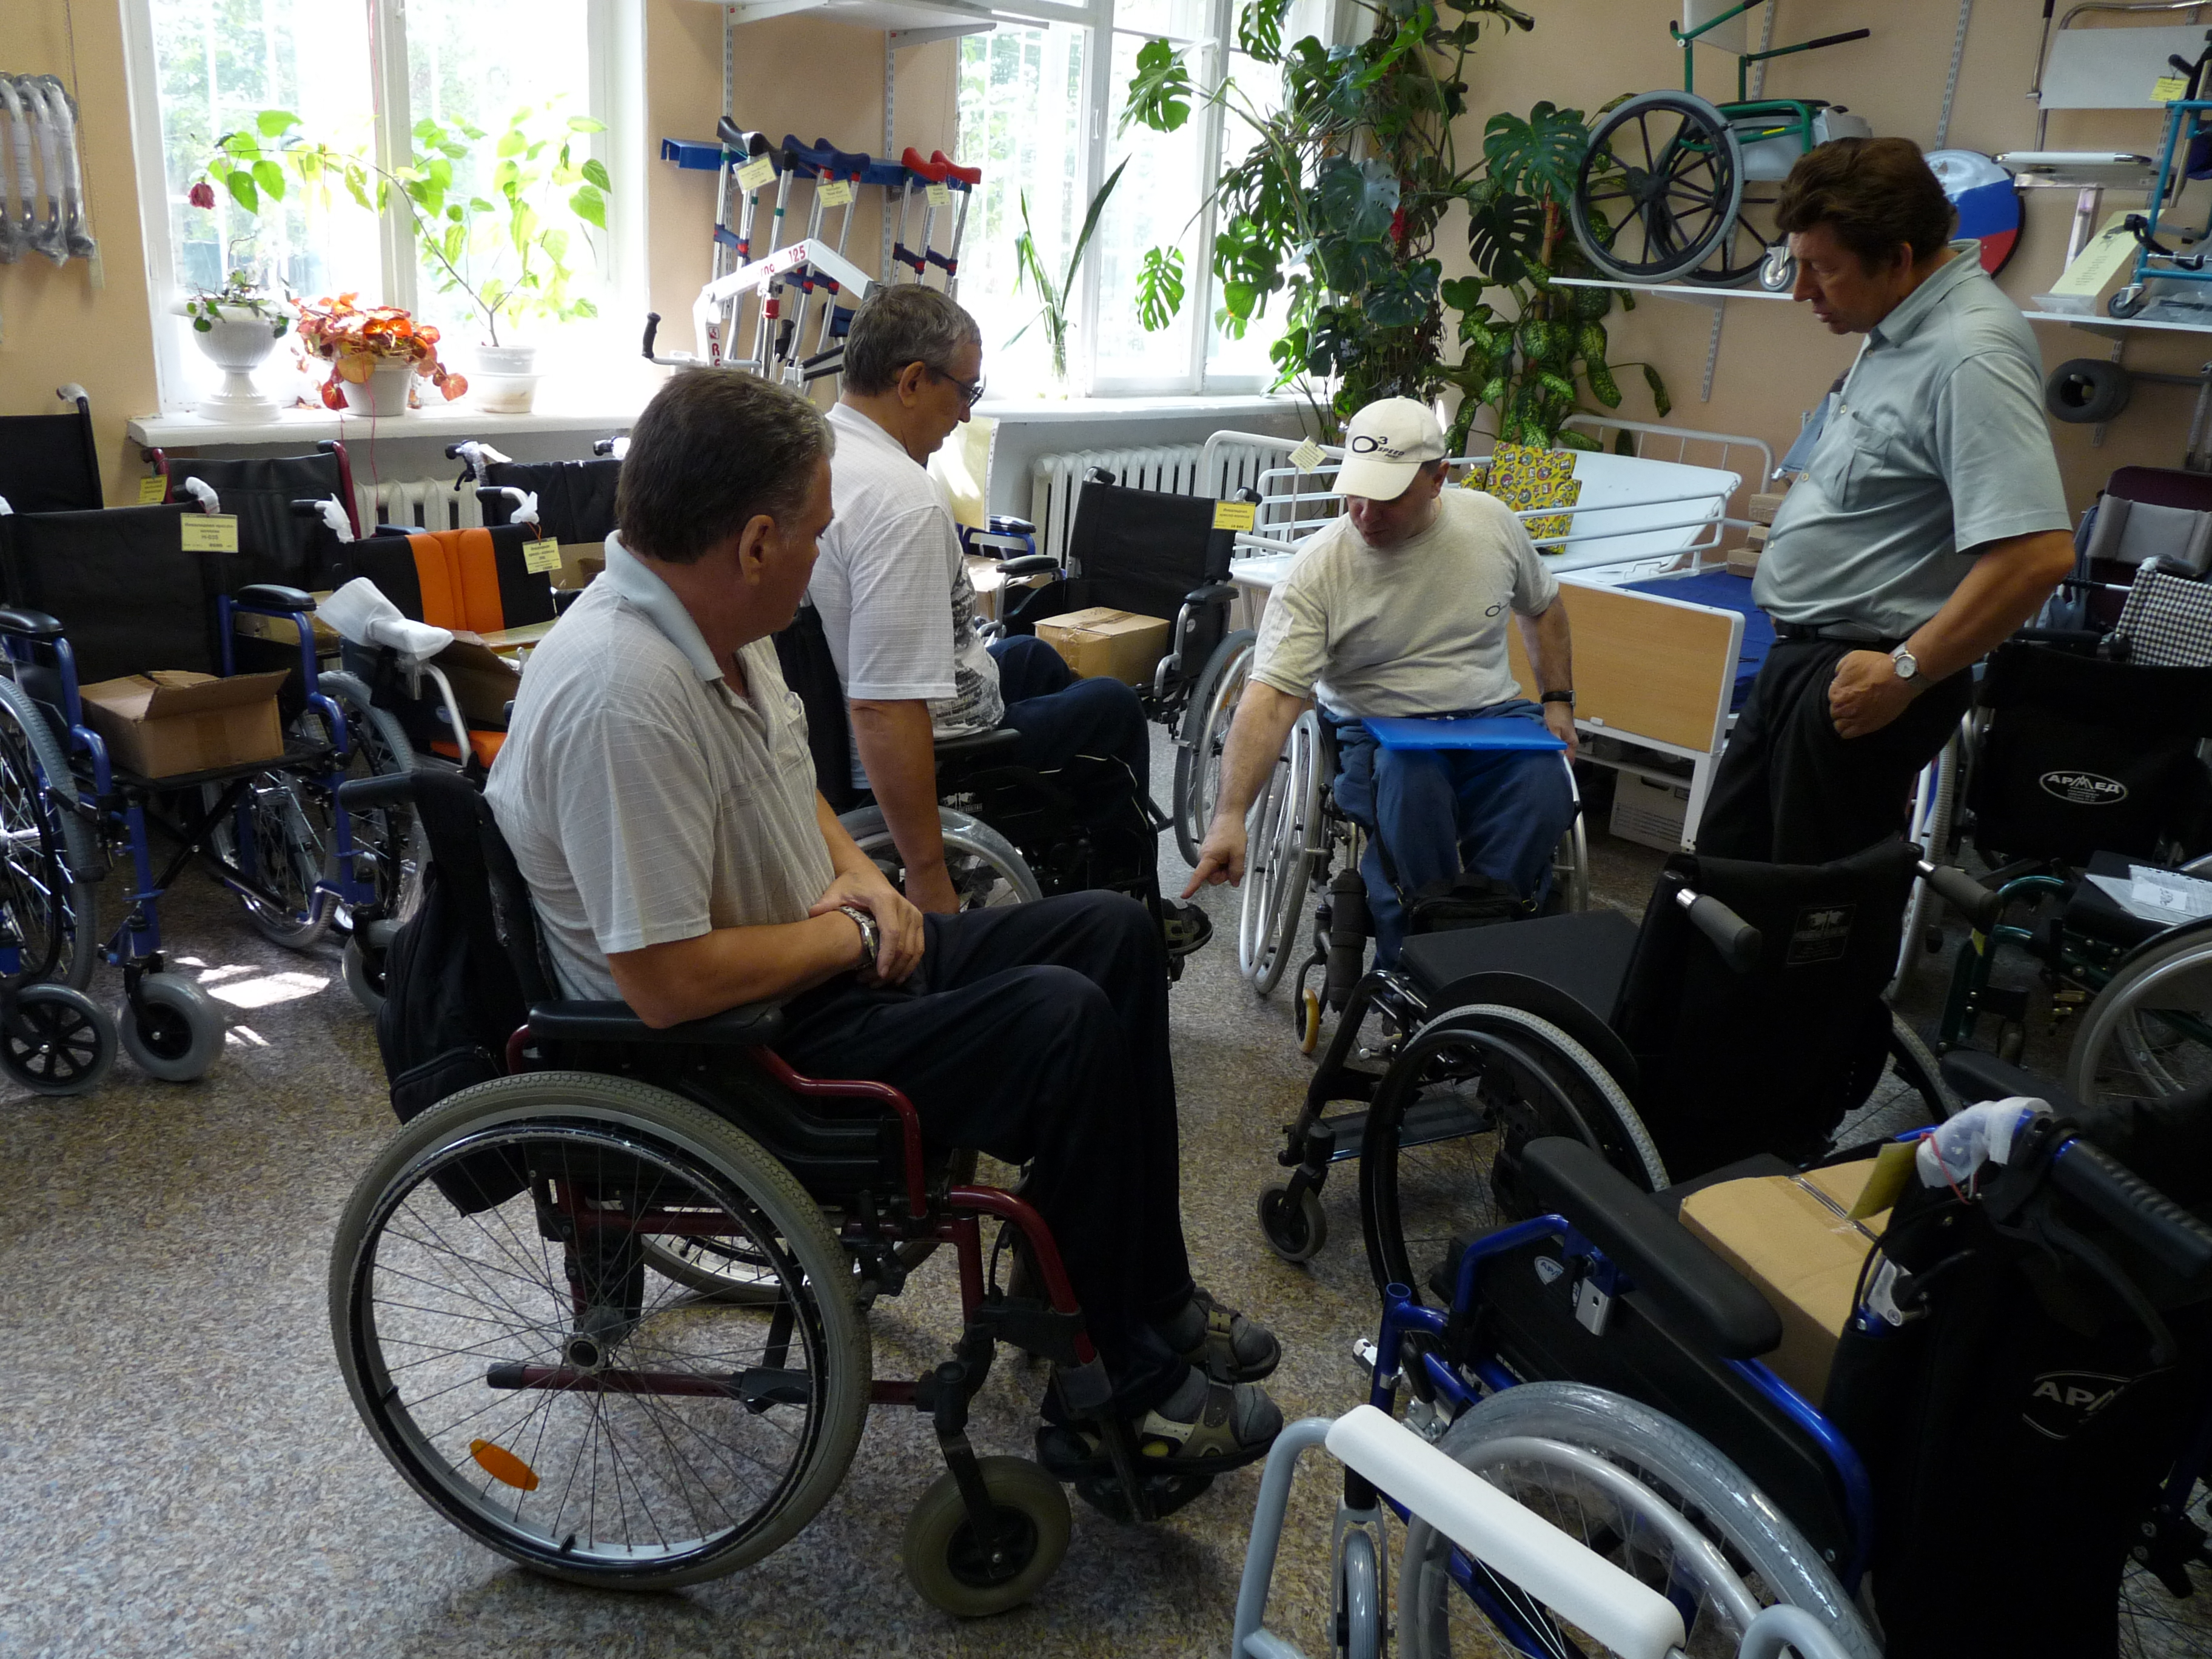 Среди пользователей инвалидных колясок шли горячие обсуждения